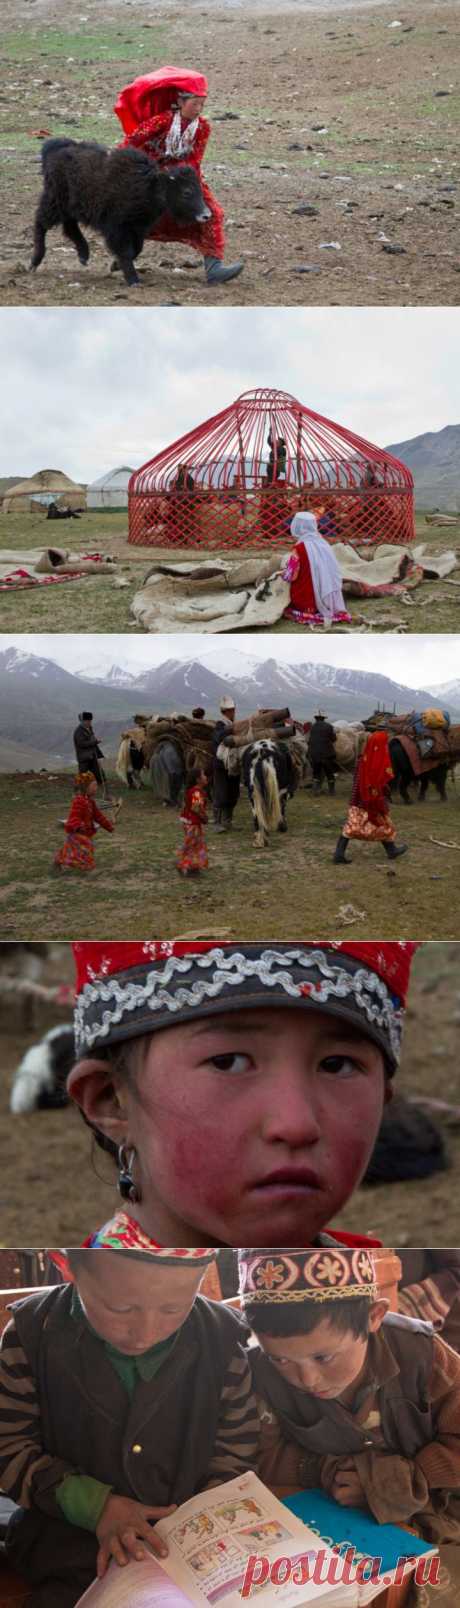 (+1) тема - Киргизы афганского Памира: из настоящего — в прошлое (35 фотографий) | ТУРИЗМ И ОТДЫХ